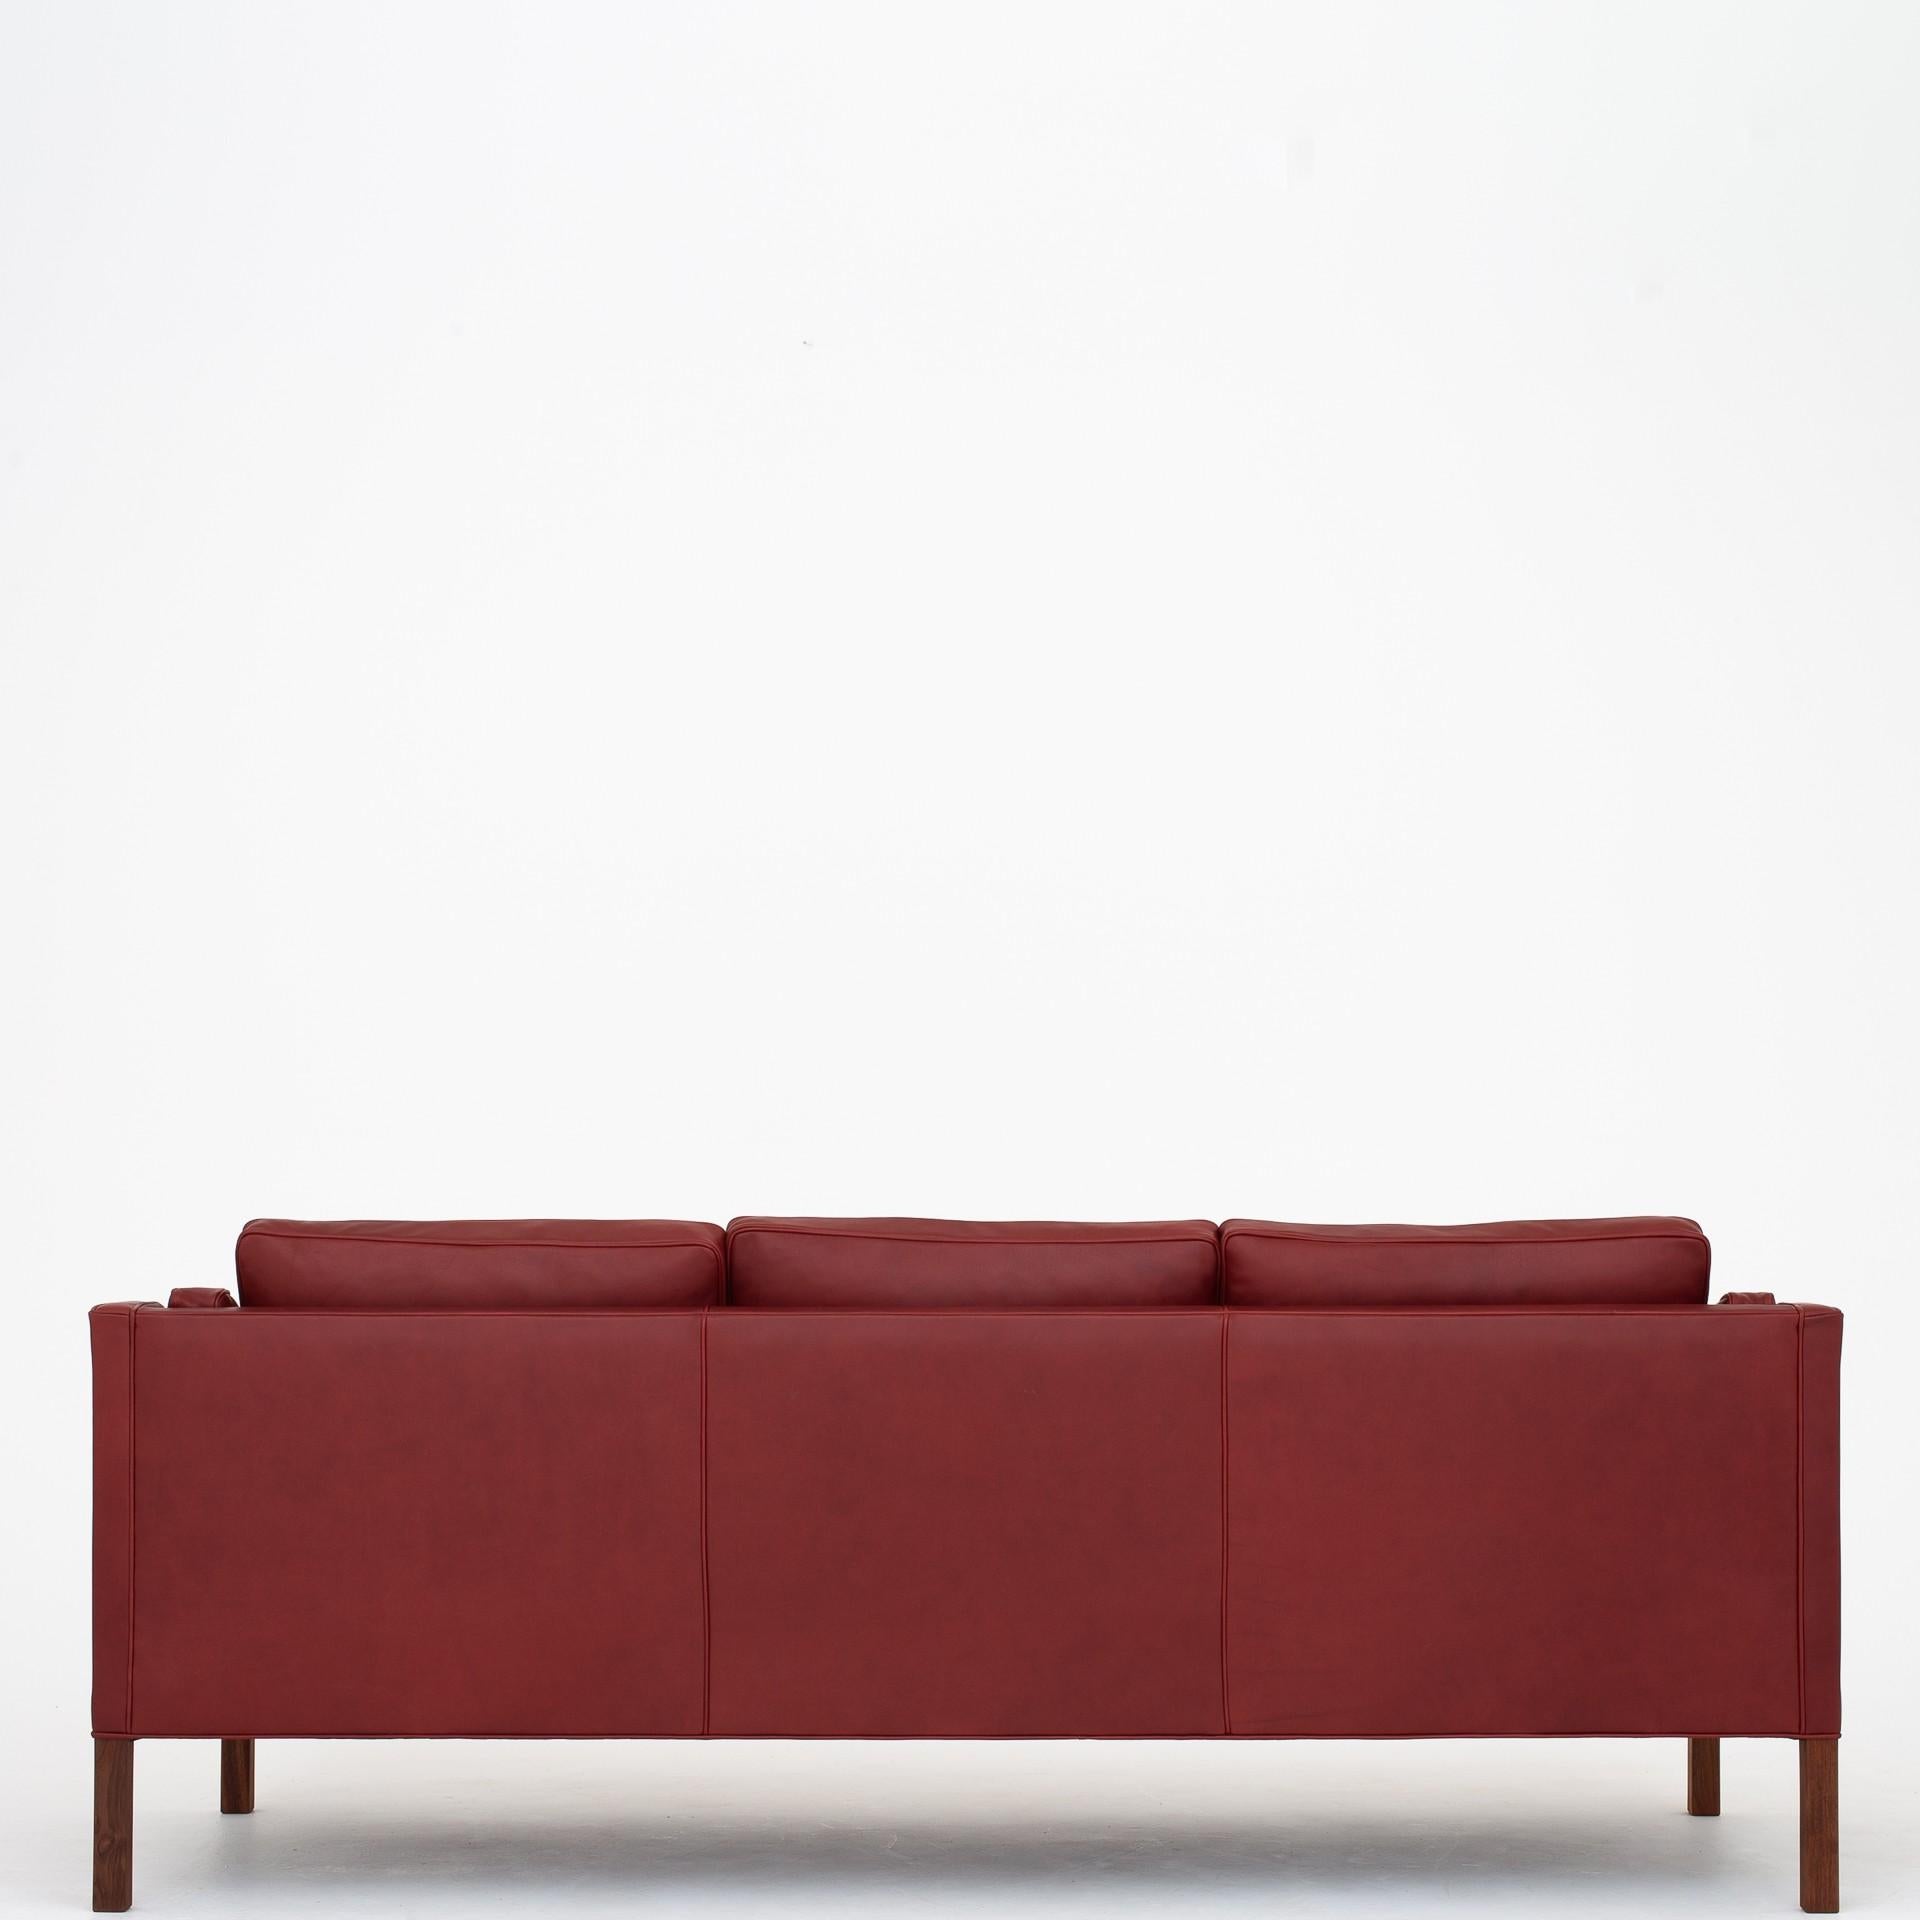 BM 2213, neu gepolstertes 3-Sitzer-Sofa in elegantem indischrotem Leder. Hersteller Fredericia Furniture.